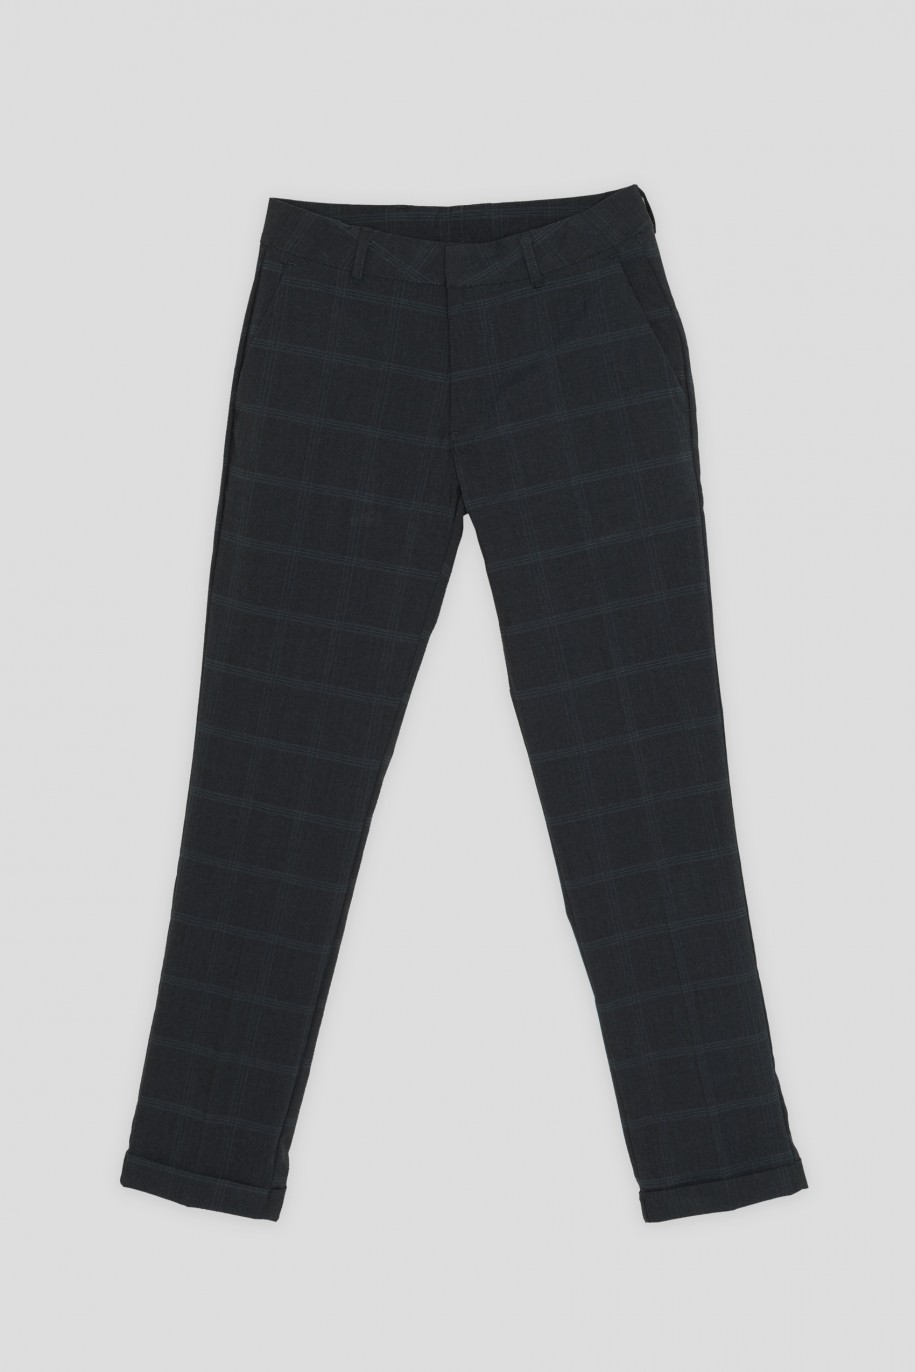 Granatowe spodnie garniturowe w kratę - 40919